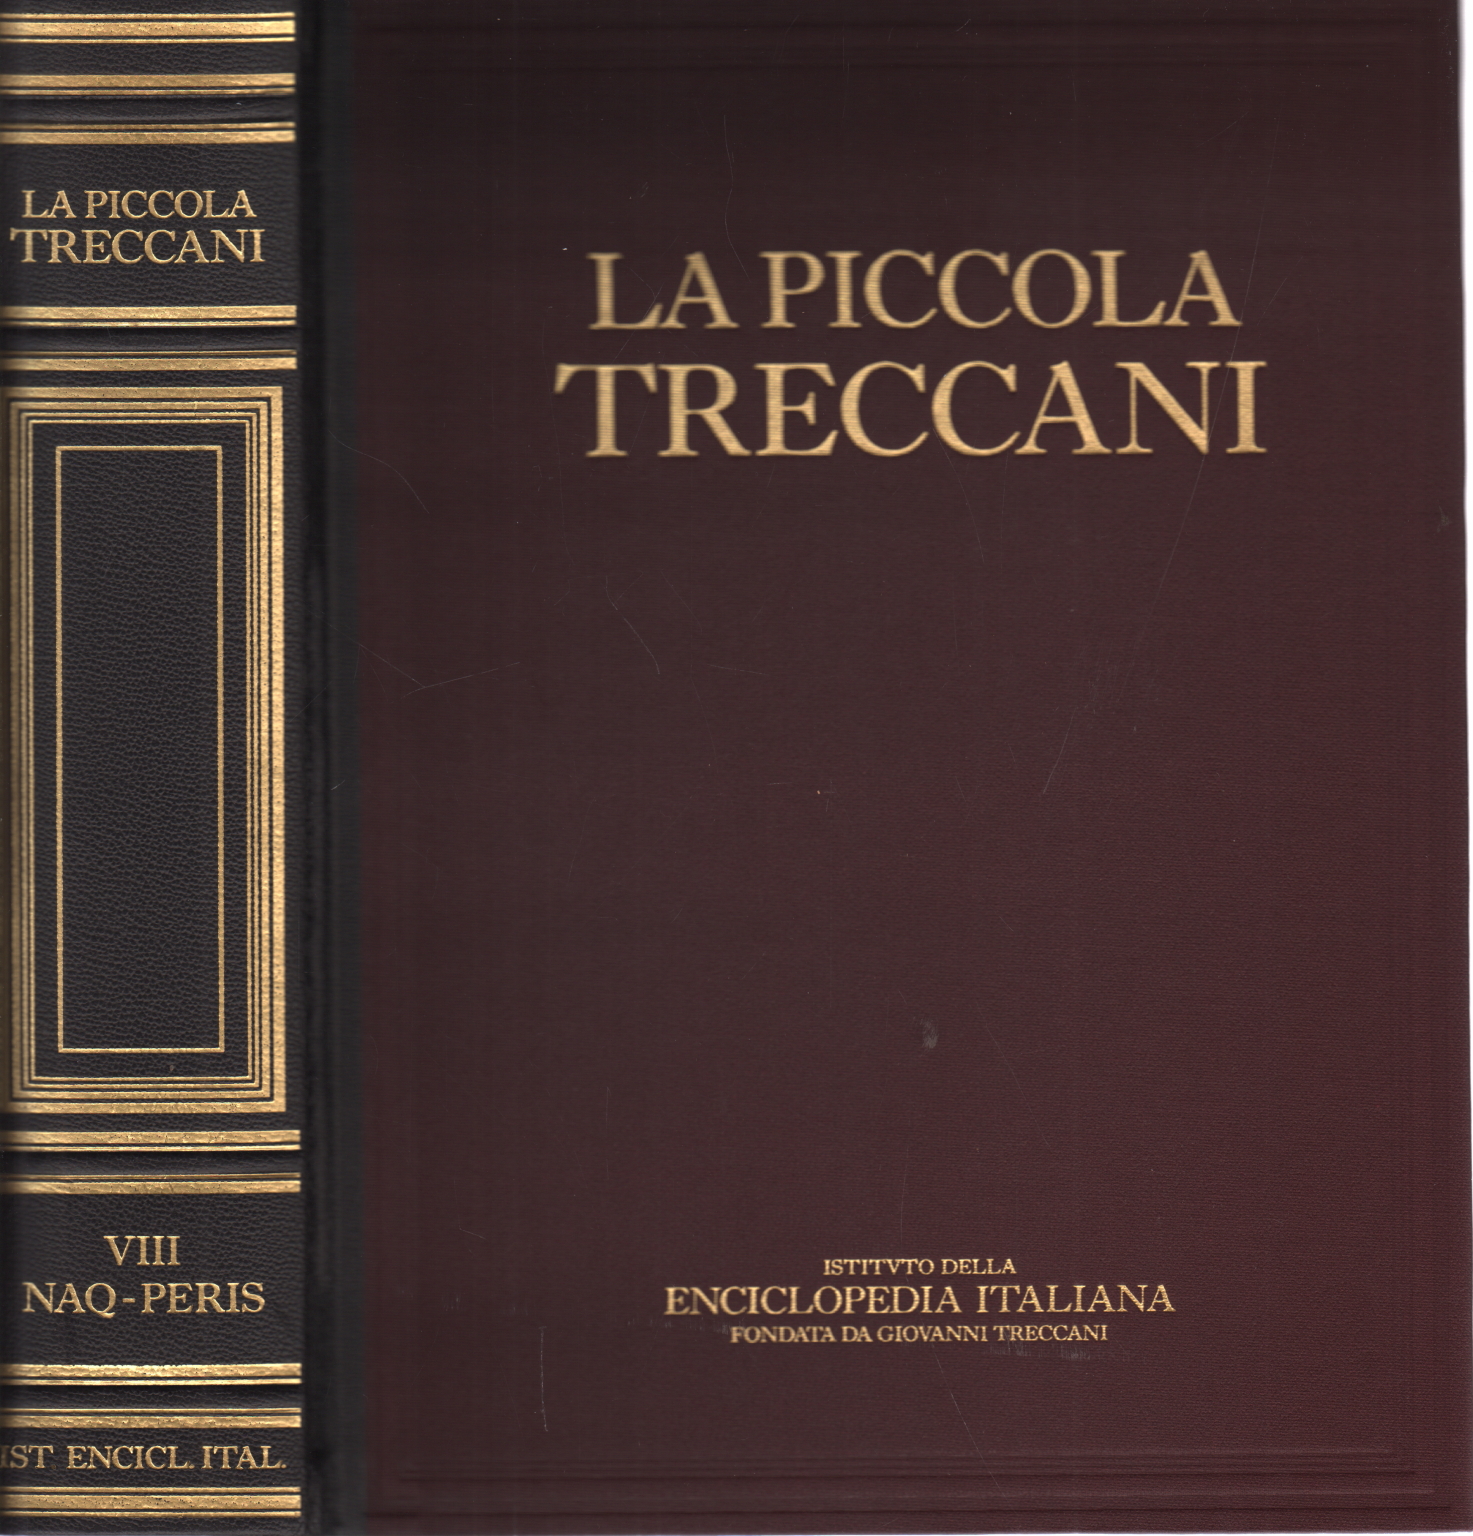 La Piccola Treccani VIII Naq-Peris, AA.VV.